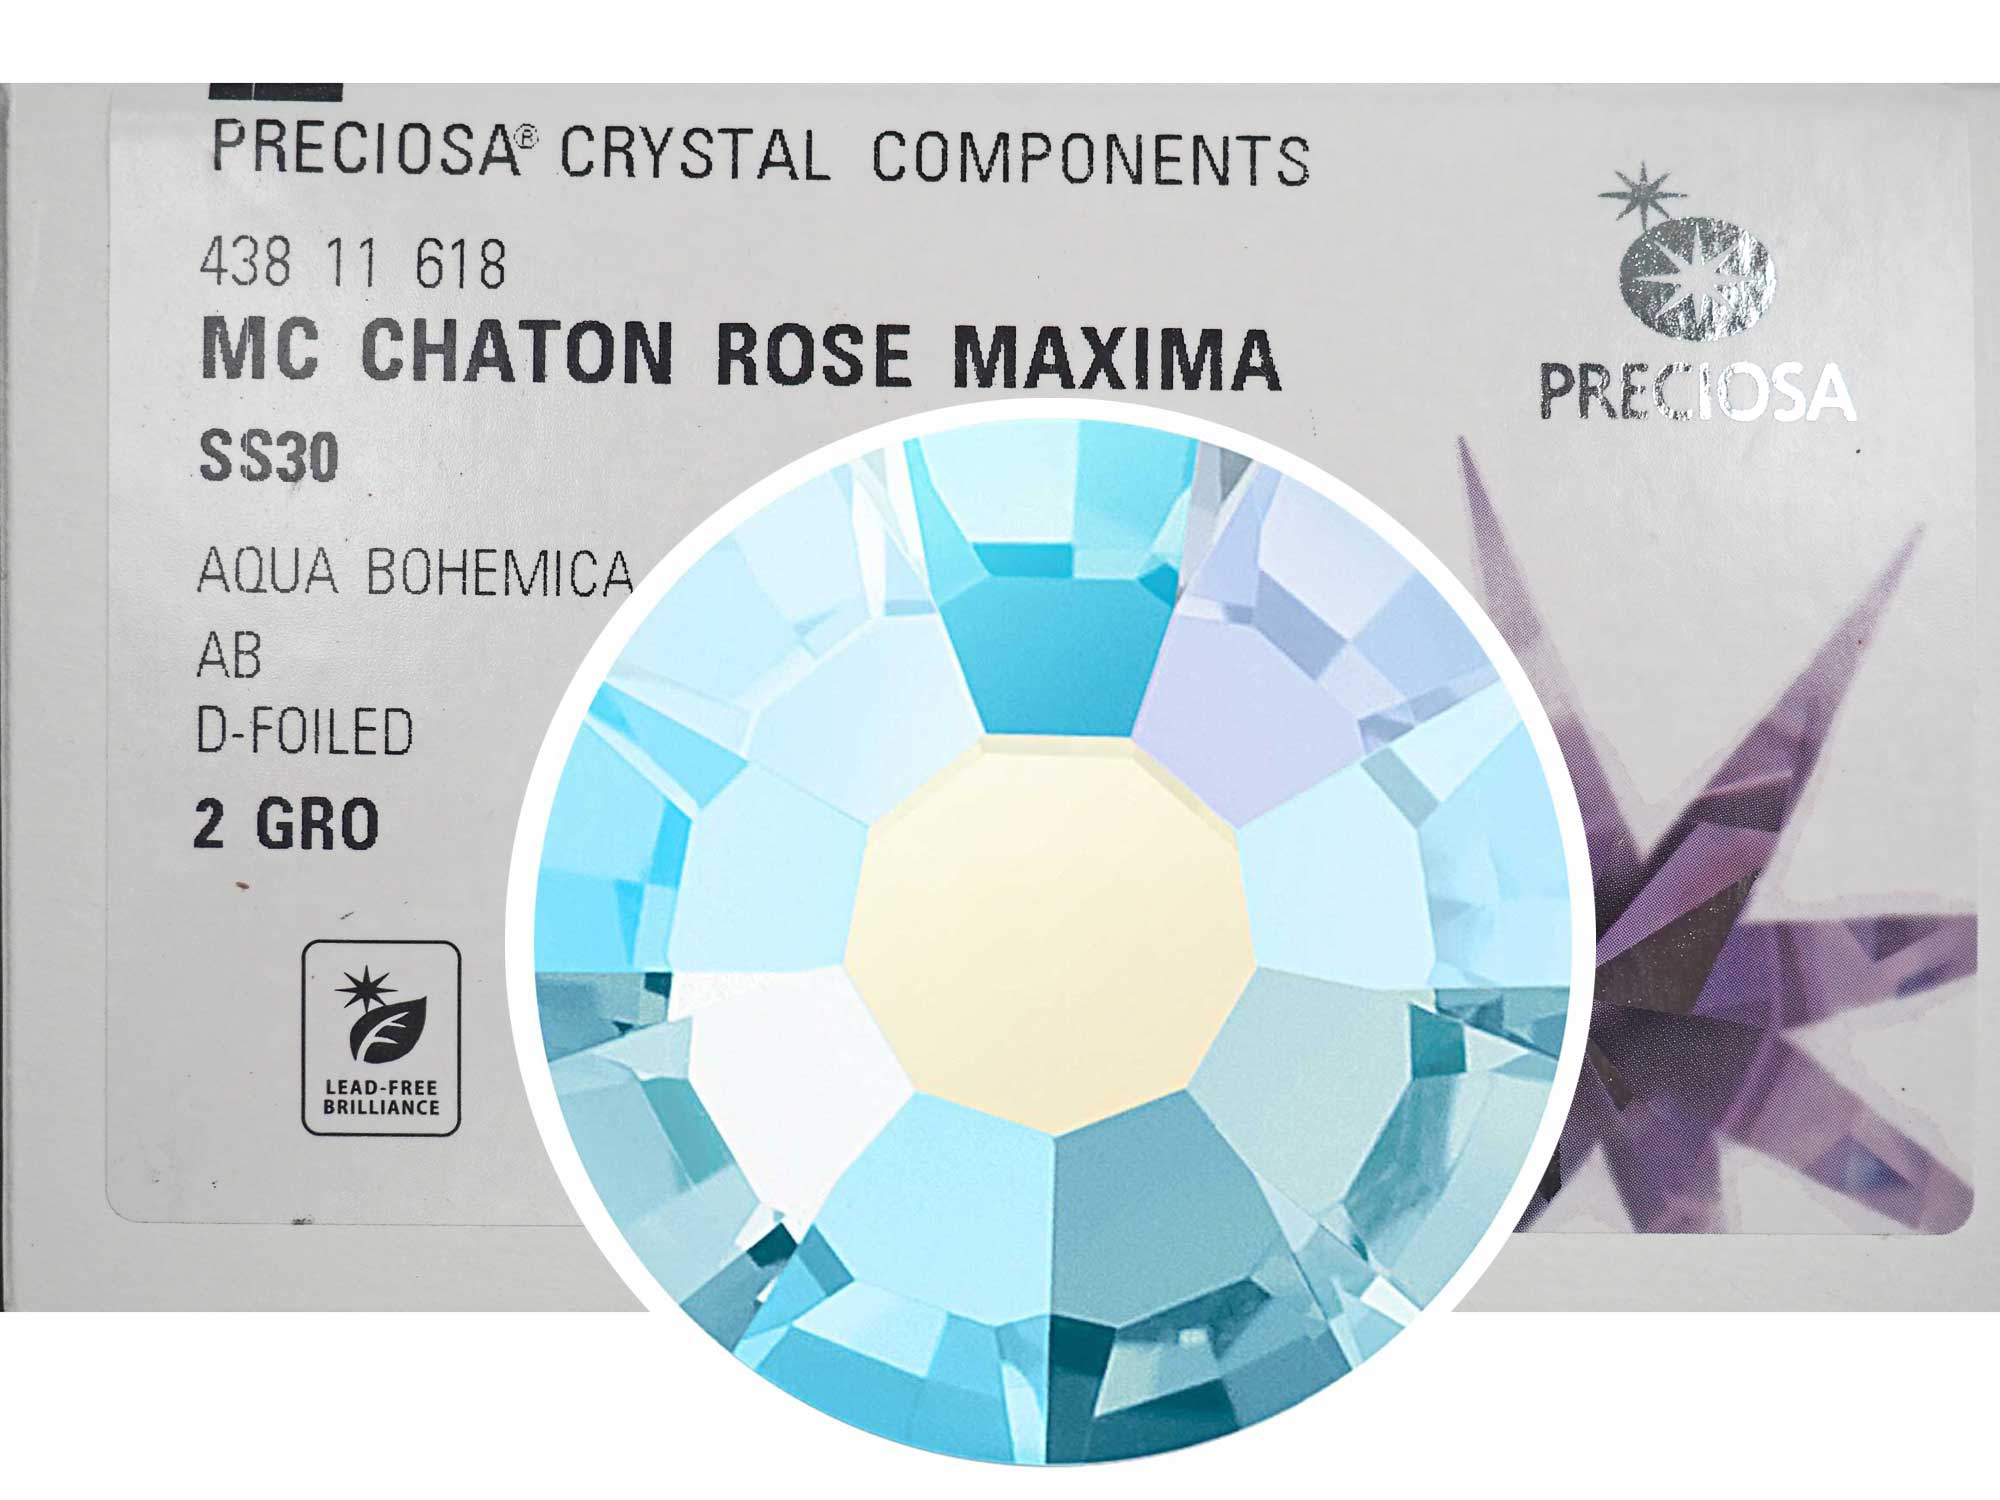 Aqua Bohemica AB, Preciosa VIVA or MAXIMA Chaton Roses (Rhinestone Flatbacks), Genuine Czech Crystals, light blue coated with Aurora Borealis